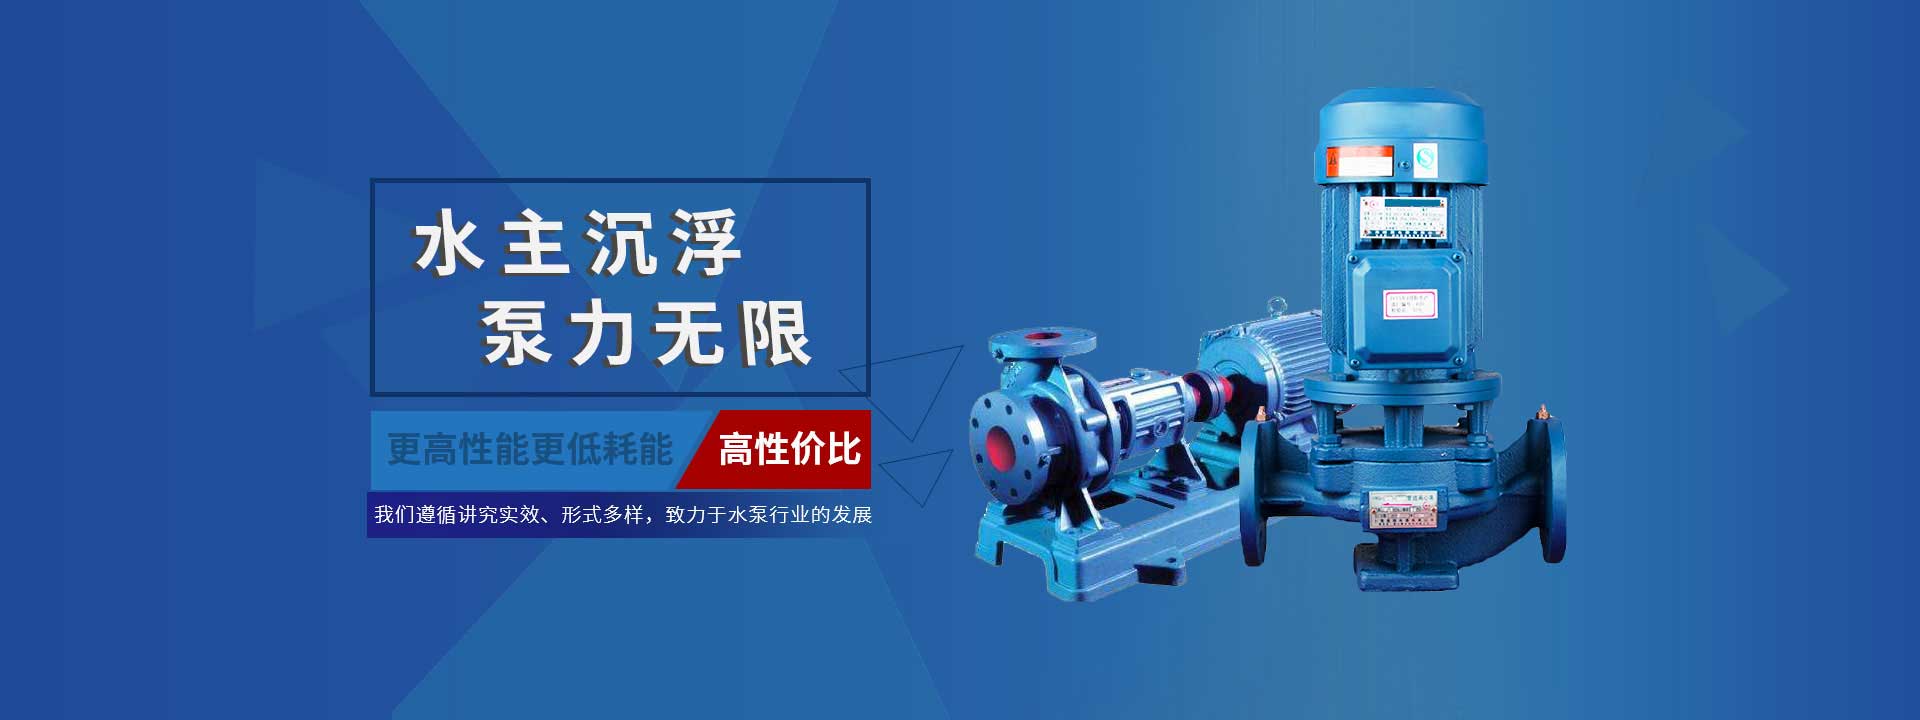 悬臂离心式渣浆泵哪里买_zj渣浆泵相关-四川八七鸿亿机电设备有限公司